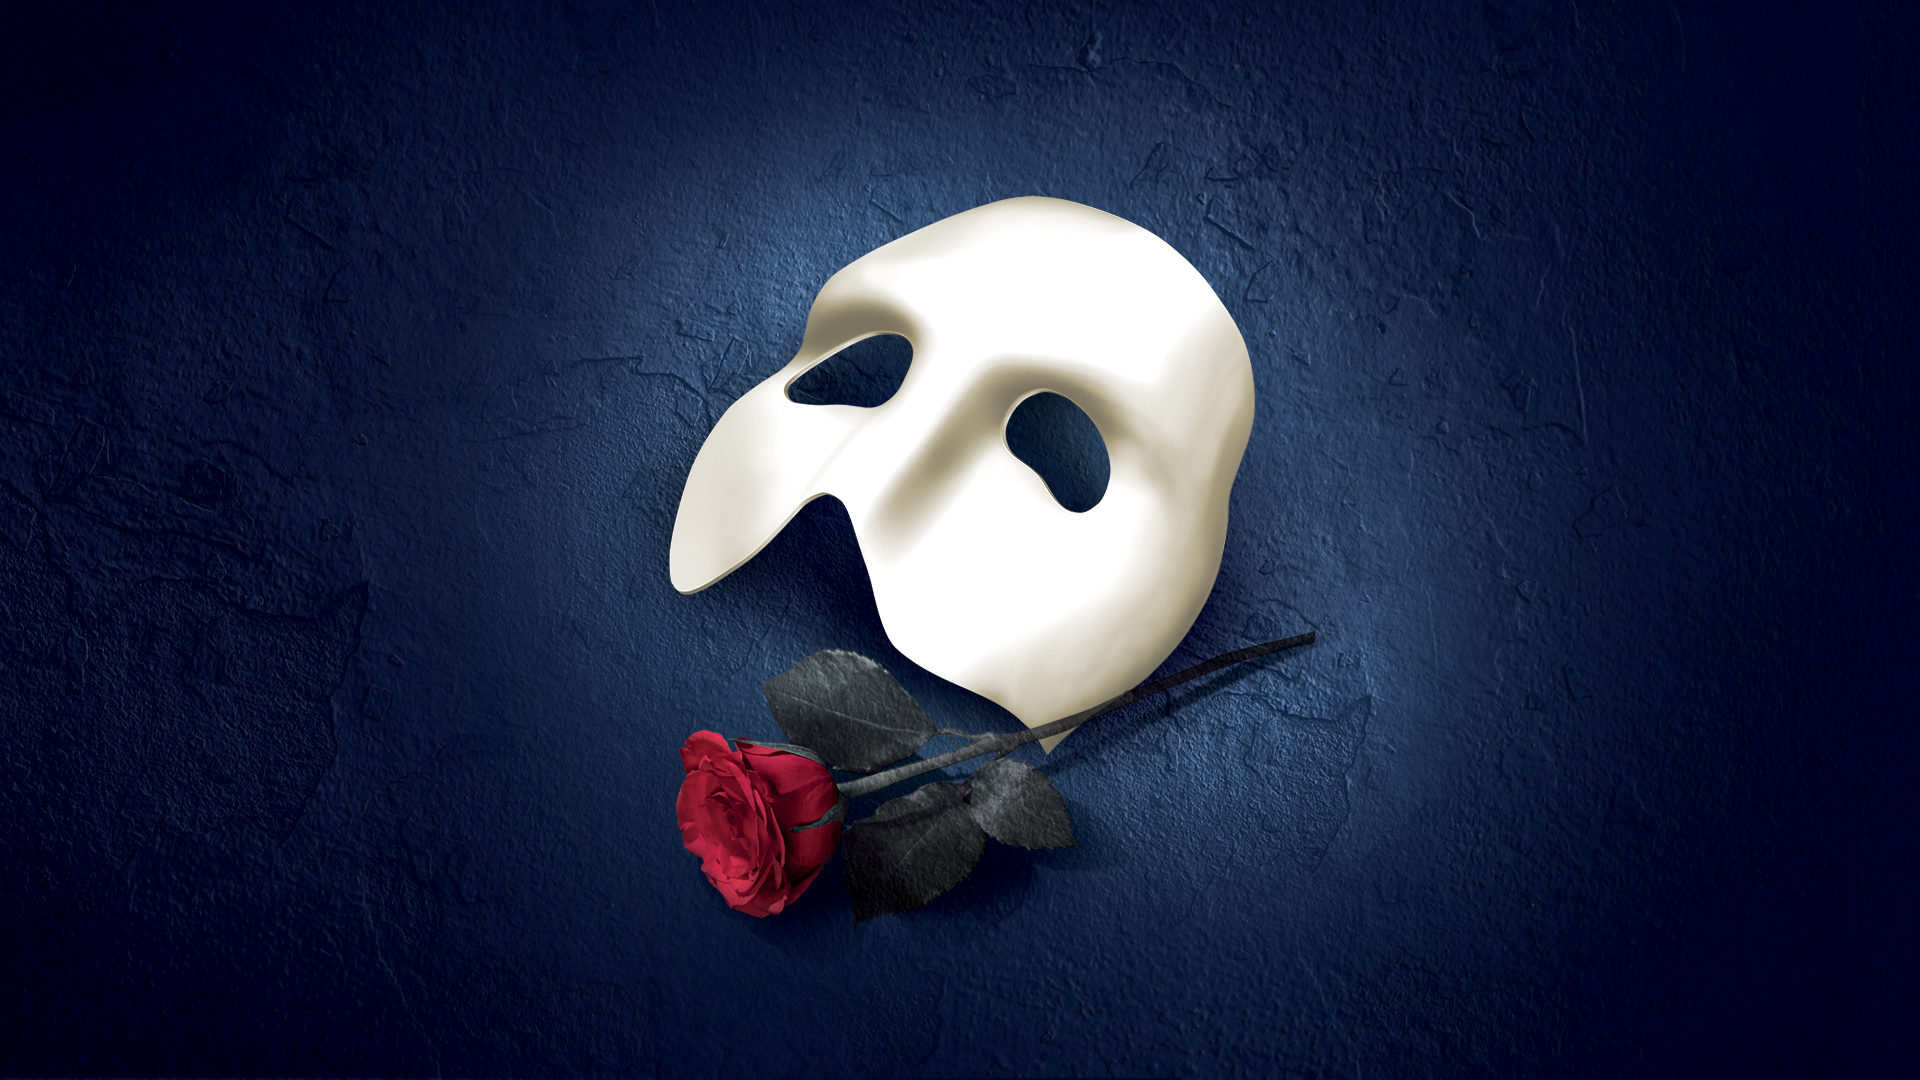 the phantom of the opera tour uk